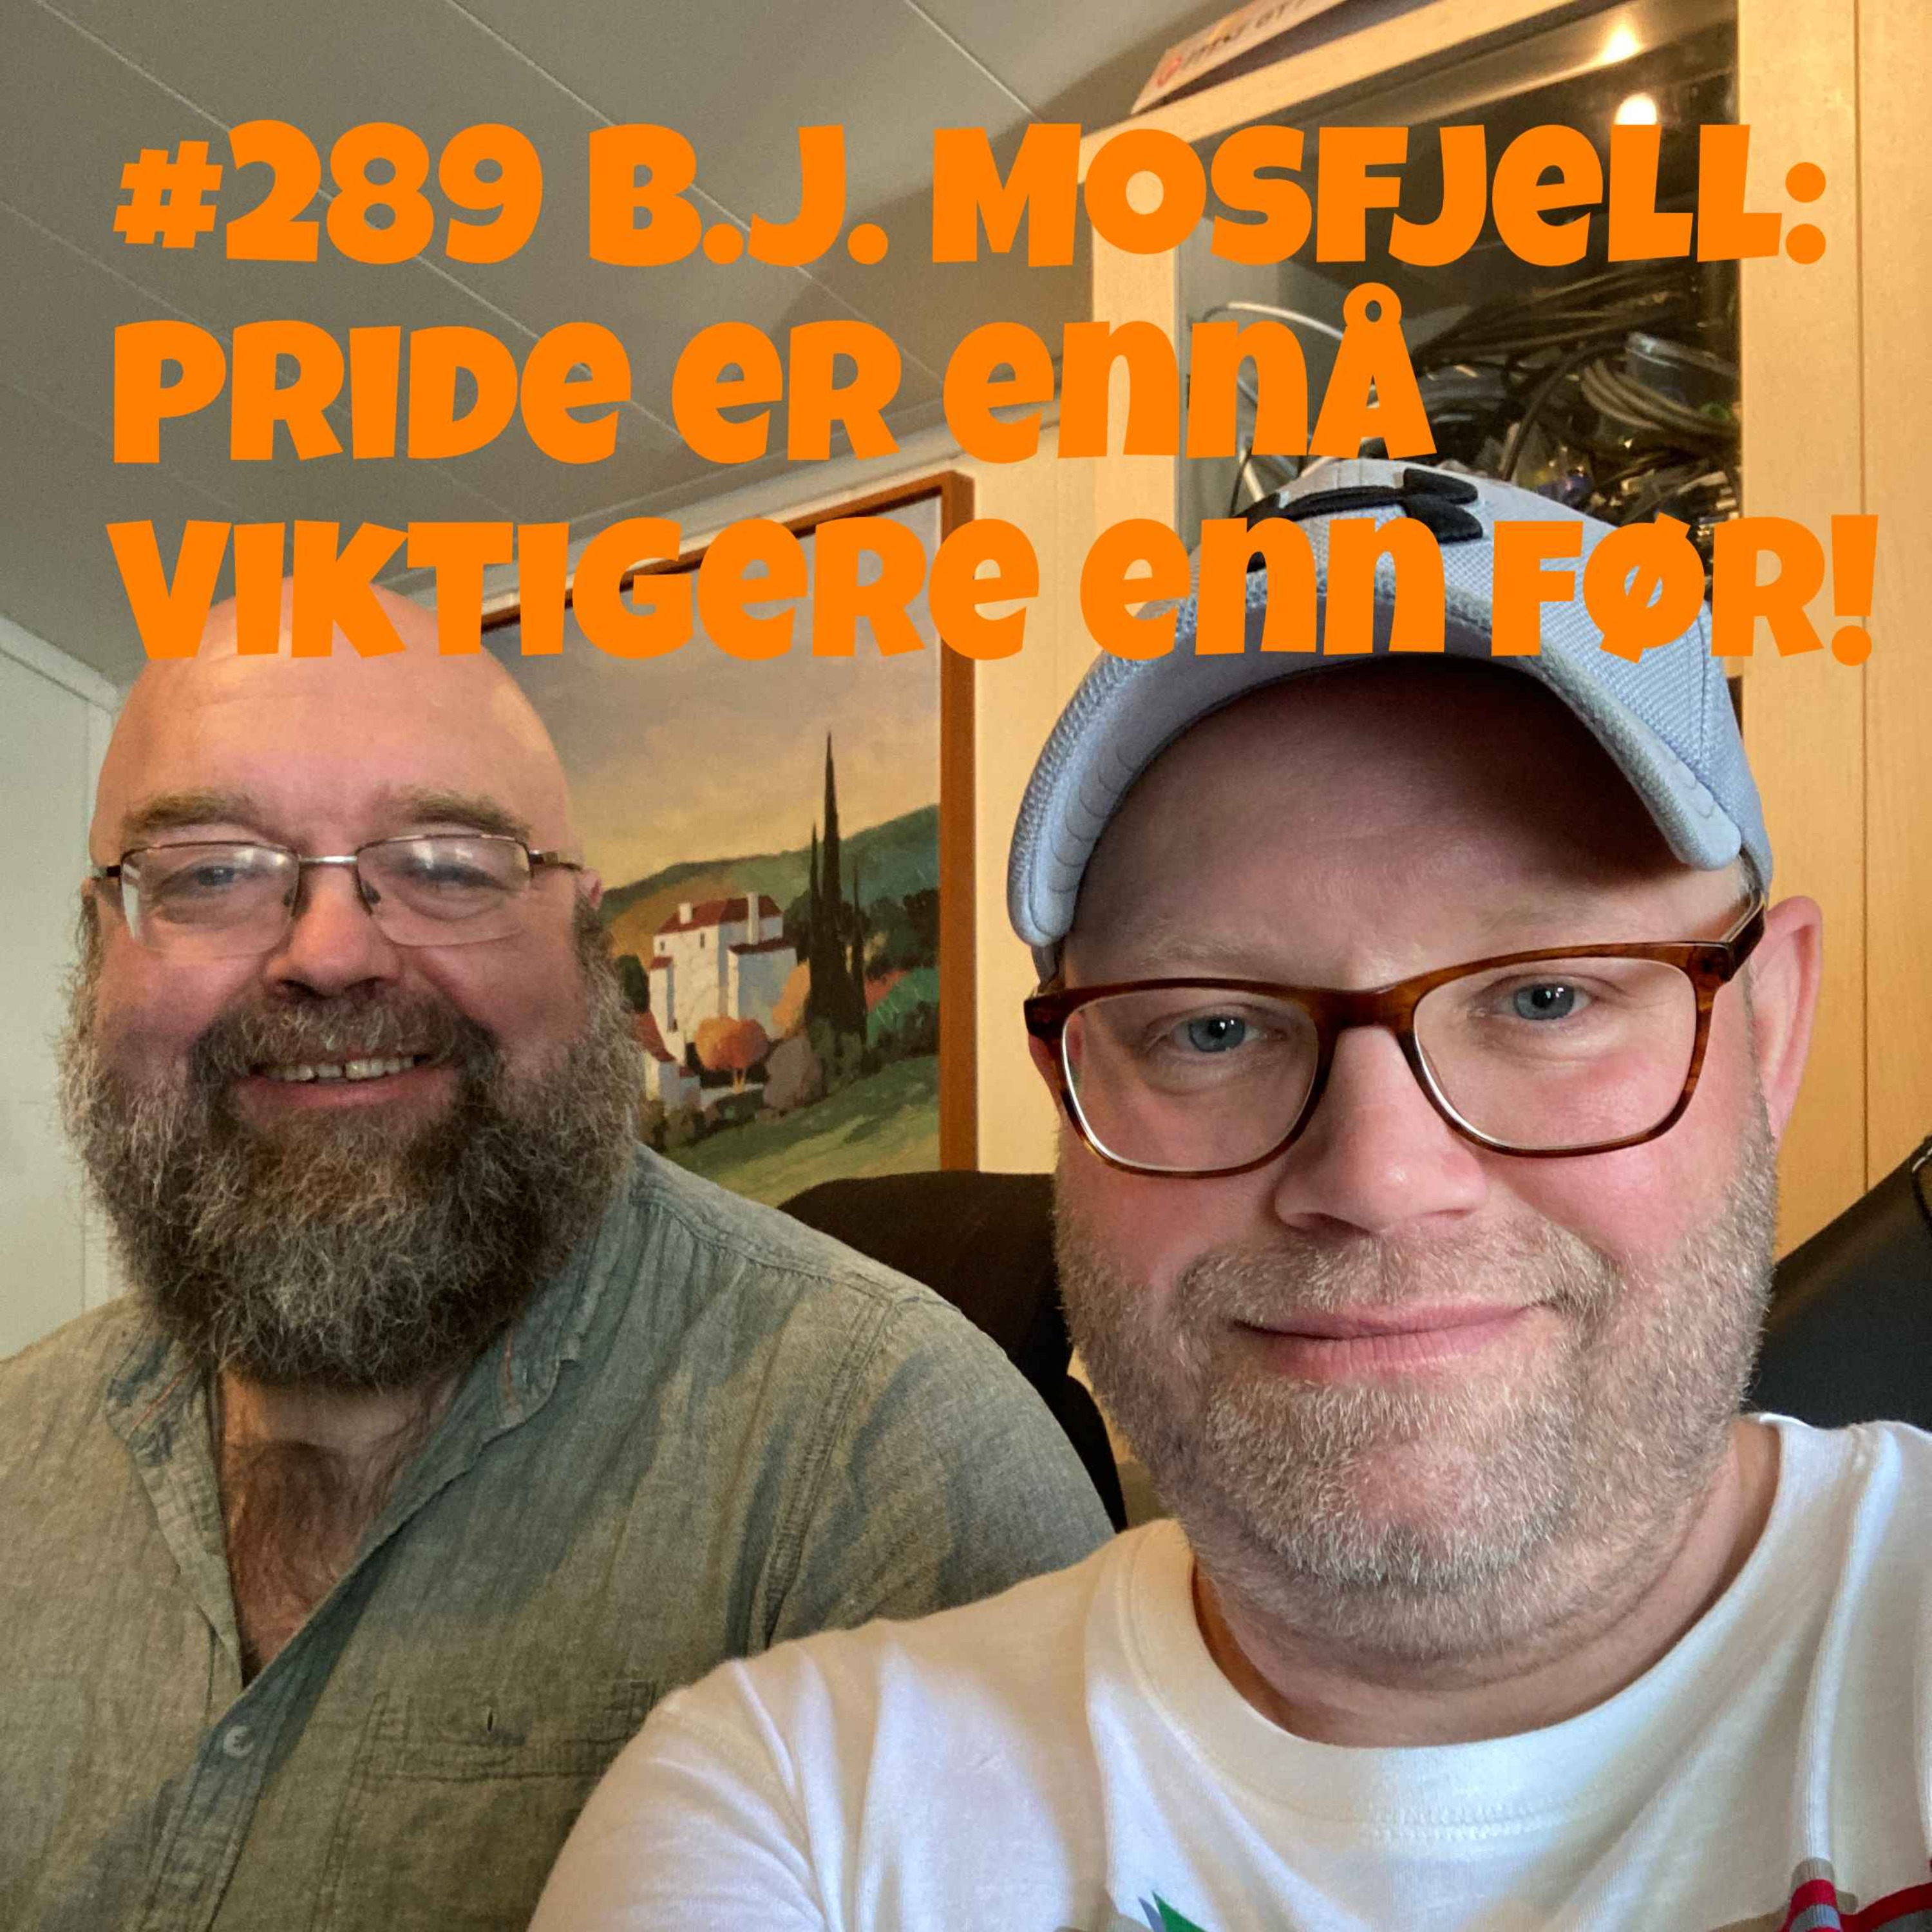 #289 B.J. Mosfjell: Pride er ennå viktigere enn før! Image